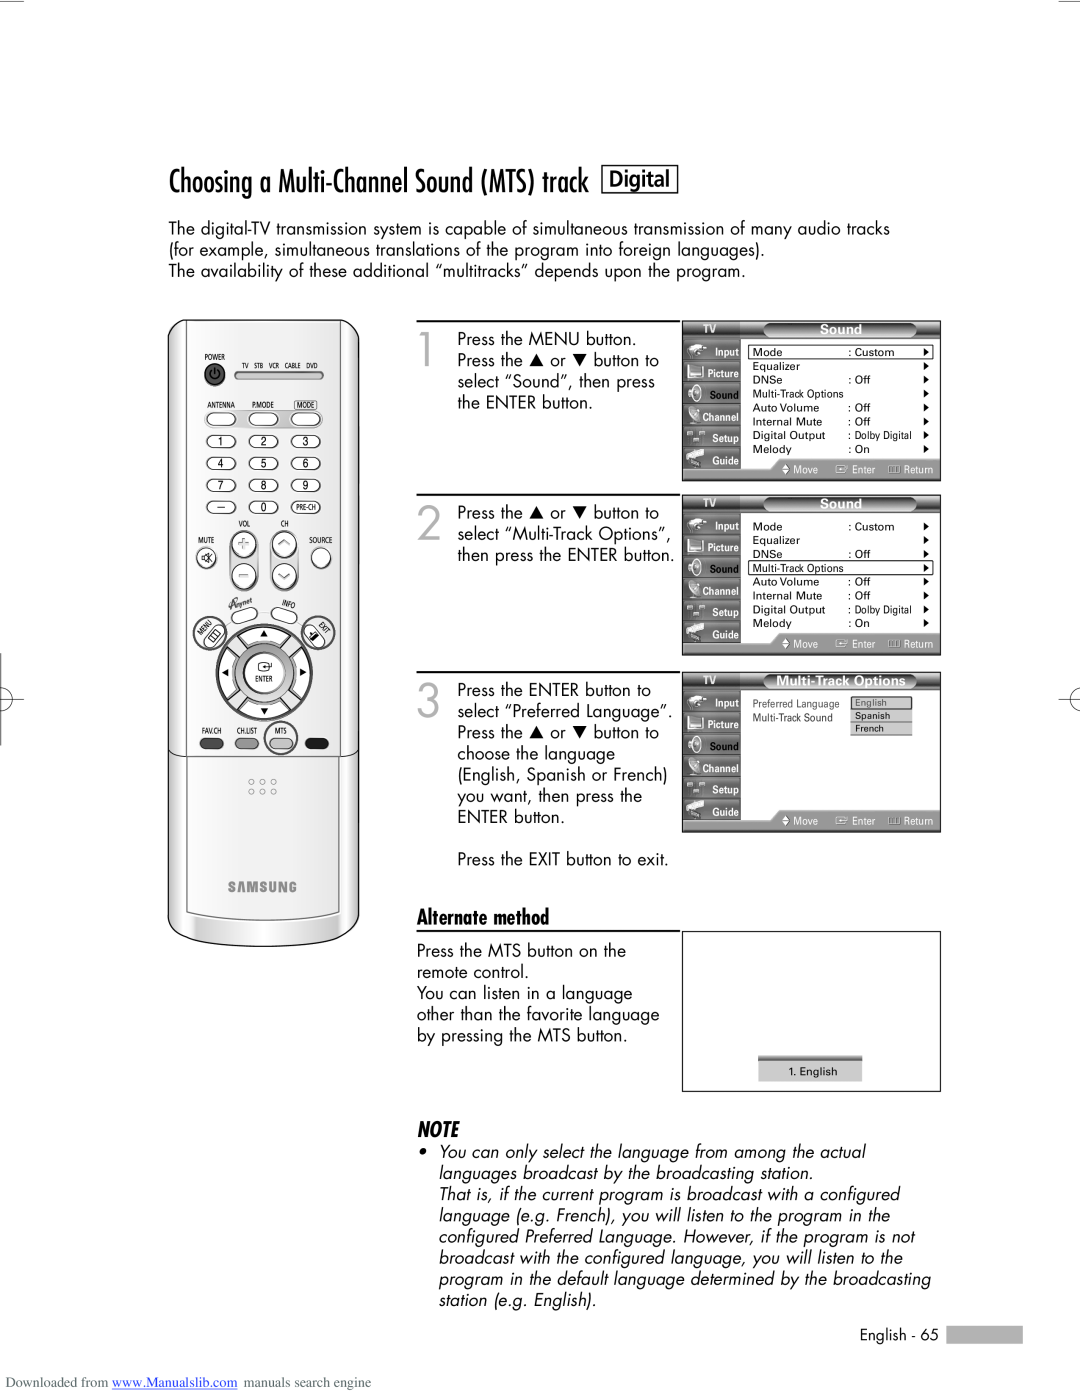 Samsung HL-R5056W, HL-R6156W manual Choosing a Multi-Channel Sound MTS track, Digital, Alternate method, Multi-Track Sound 